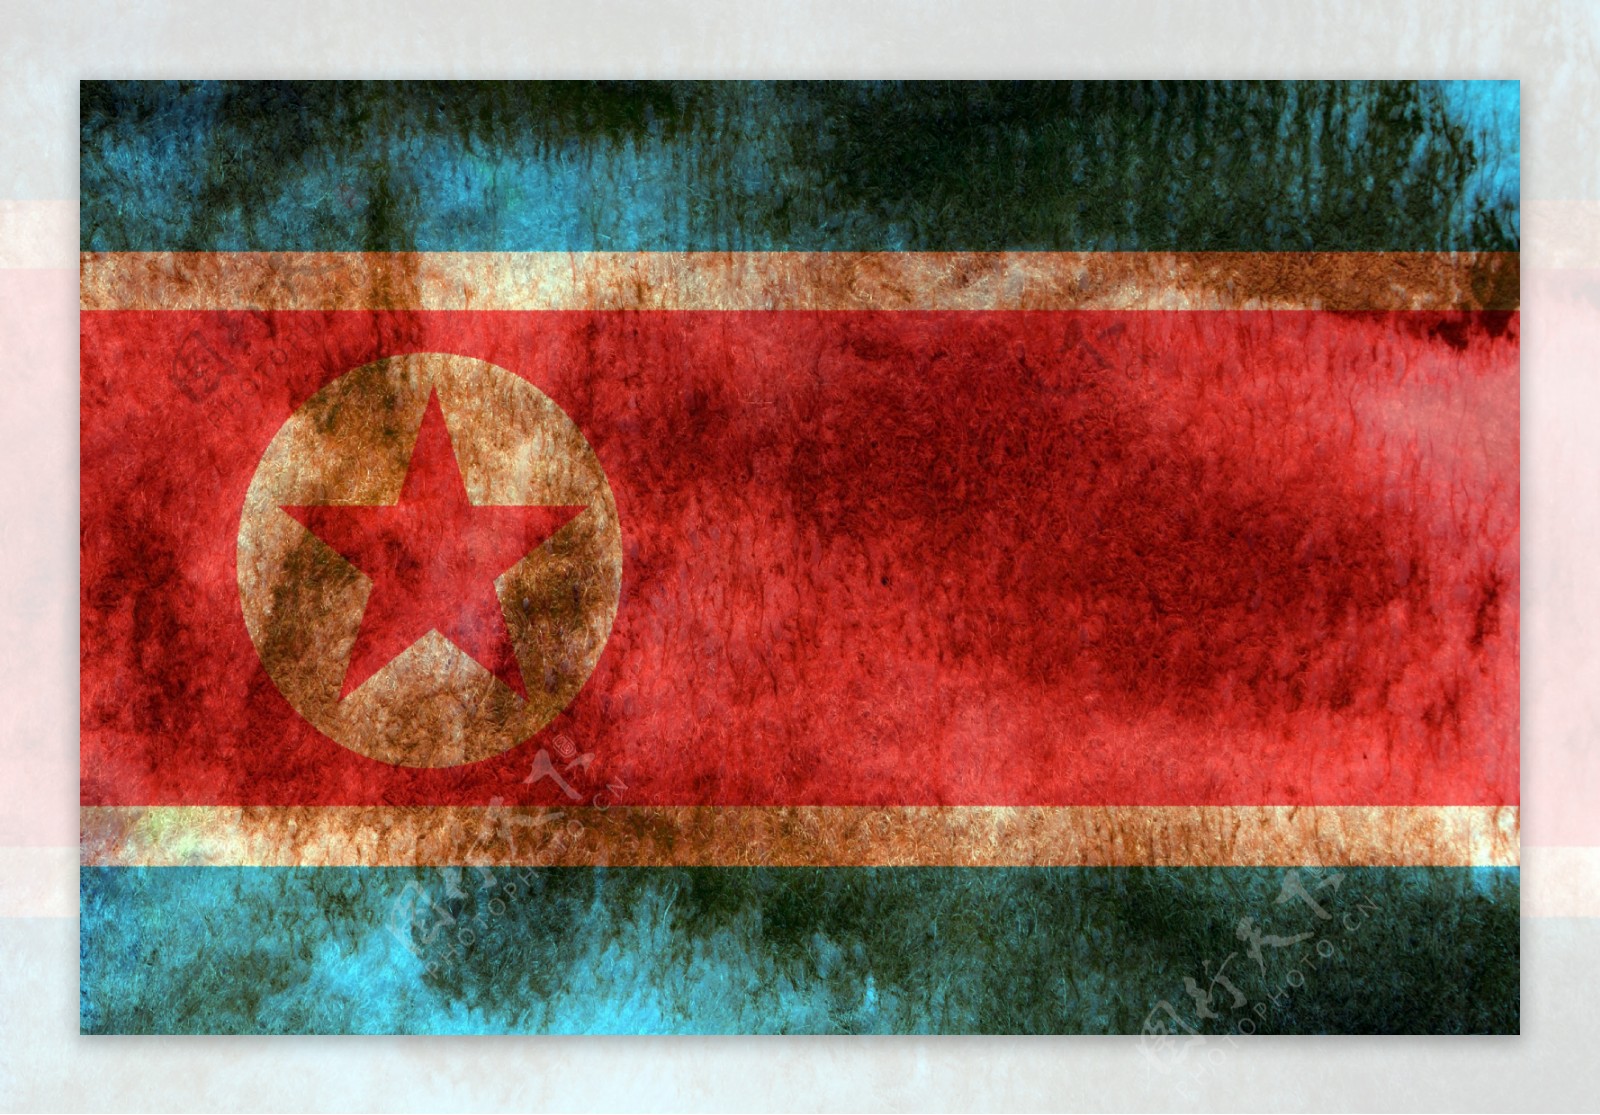 朝鲜画国旗